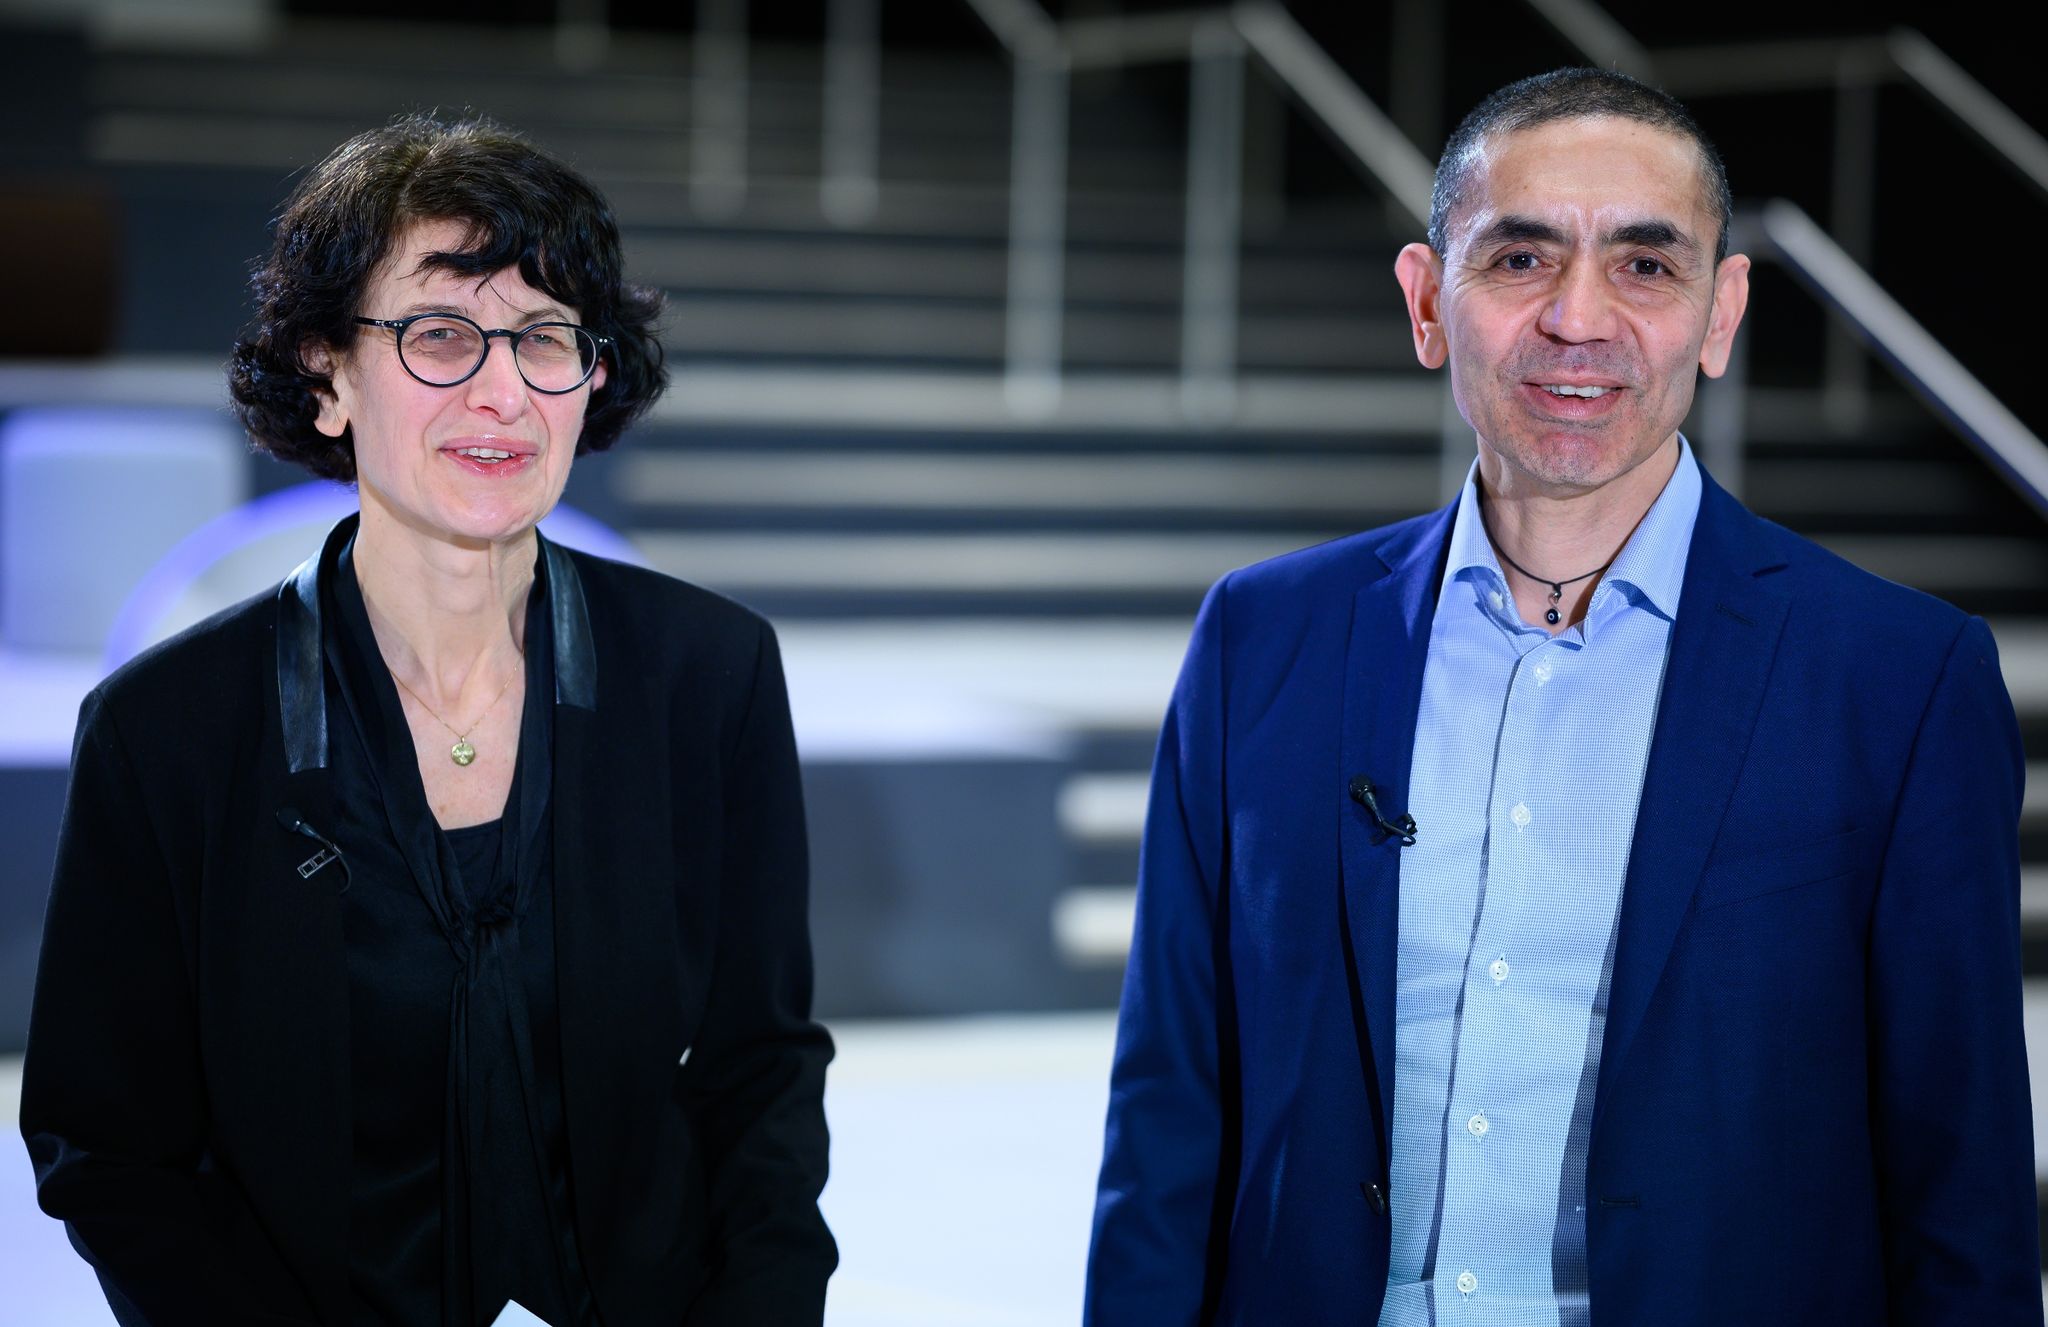 Ugur Sahin y Özlem Türeci, pareja y fundadores de BioNTech, considerada hoy la biotecnológica más importante del mundo / Foto: Bernd von Jutrczenka/dpa-Pool/dpa